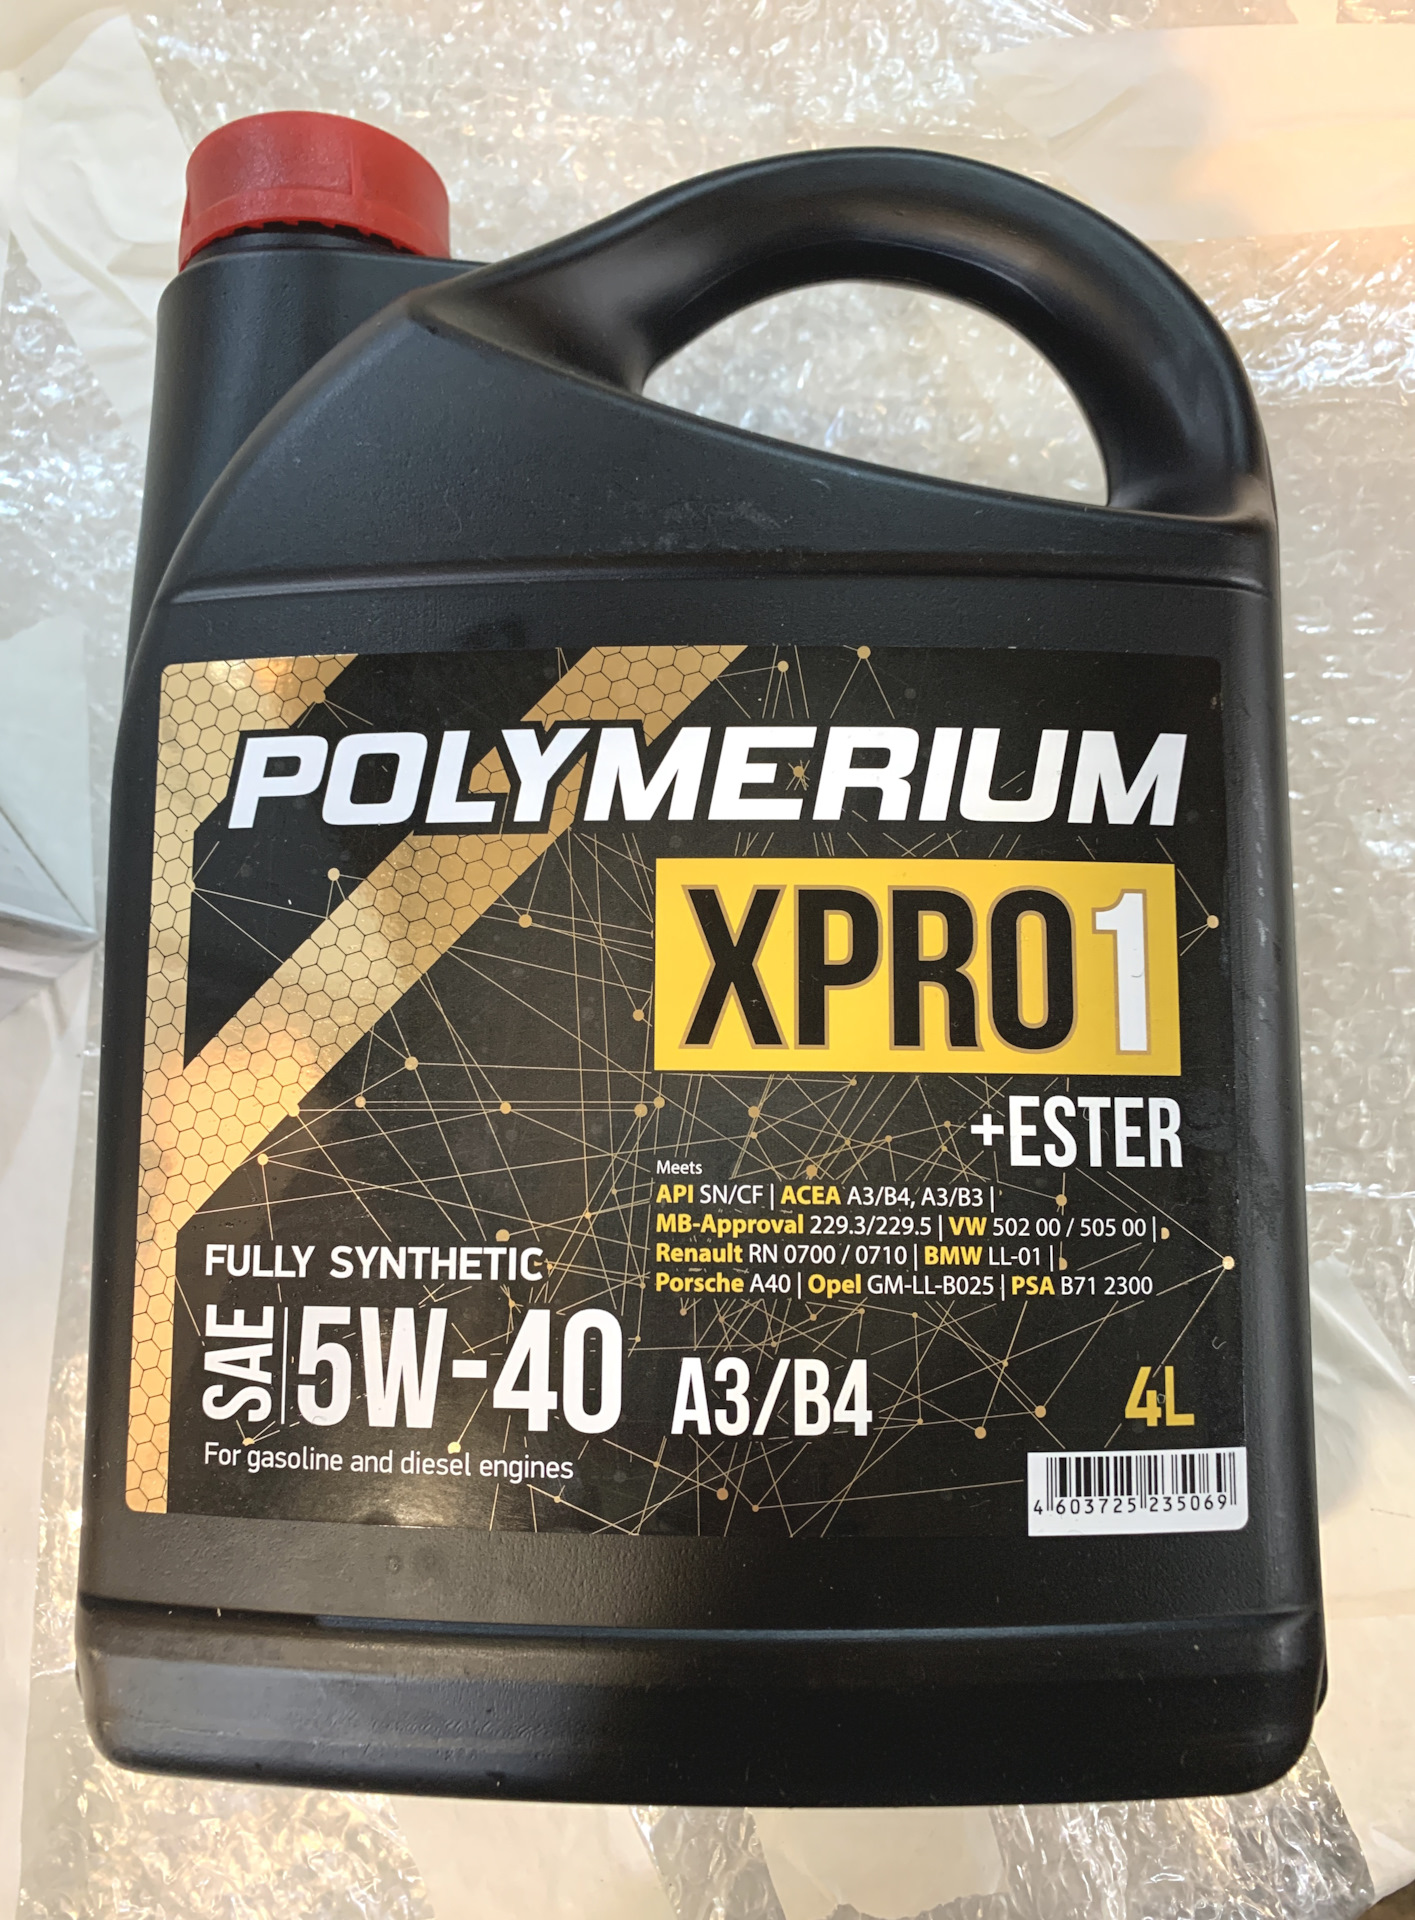 Масло полимериум цена. Polymerium xpro2 5w-40. Полимериум 5w40. Полимериум 5w40 xpro2. Polymerium xpro1 5w-40 a3/b4.